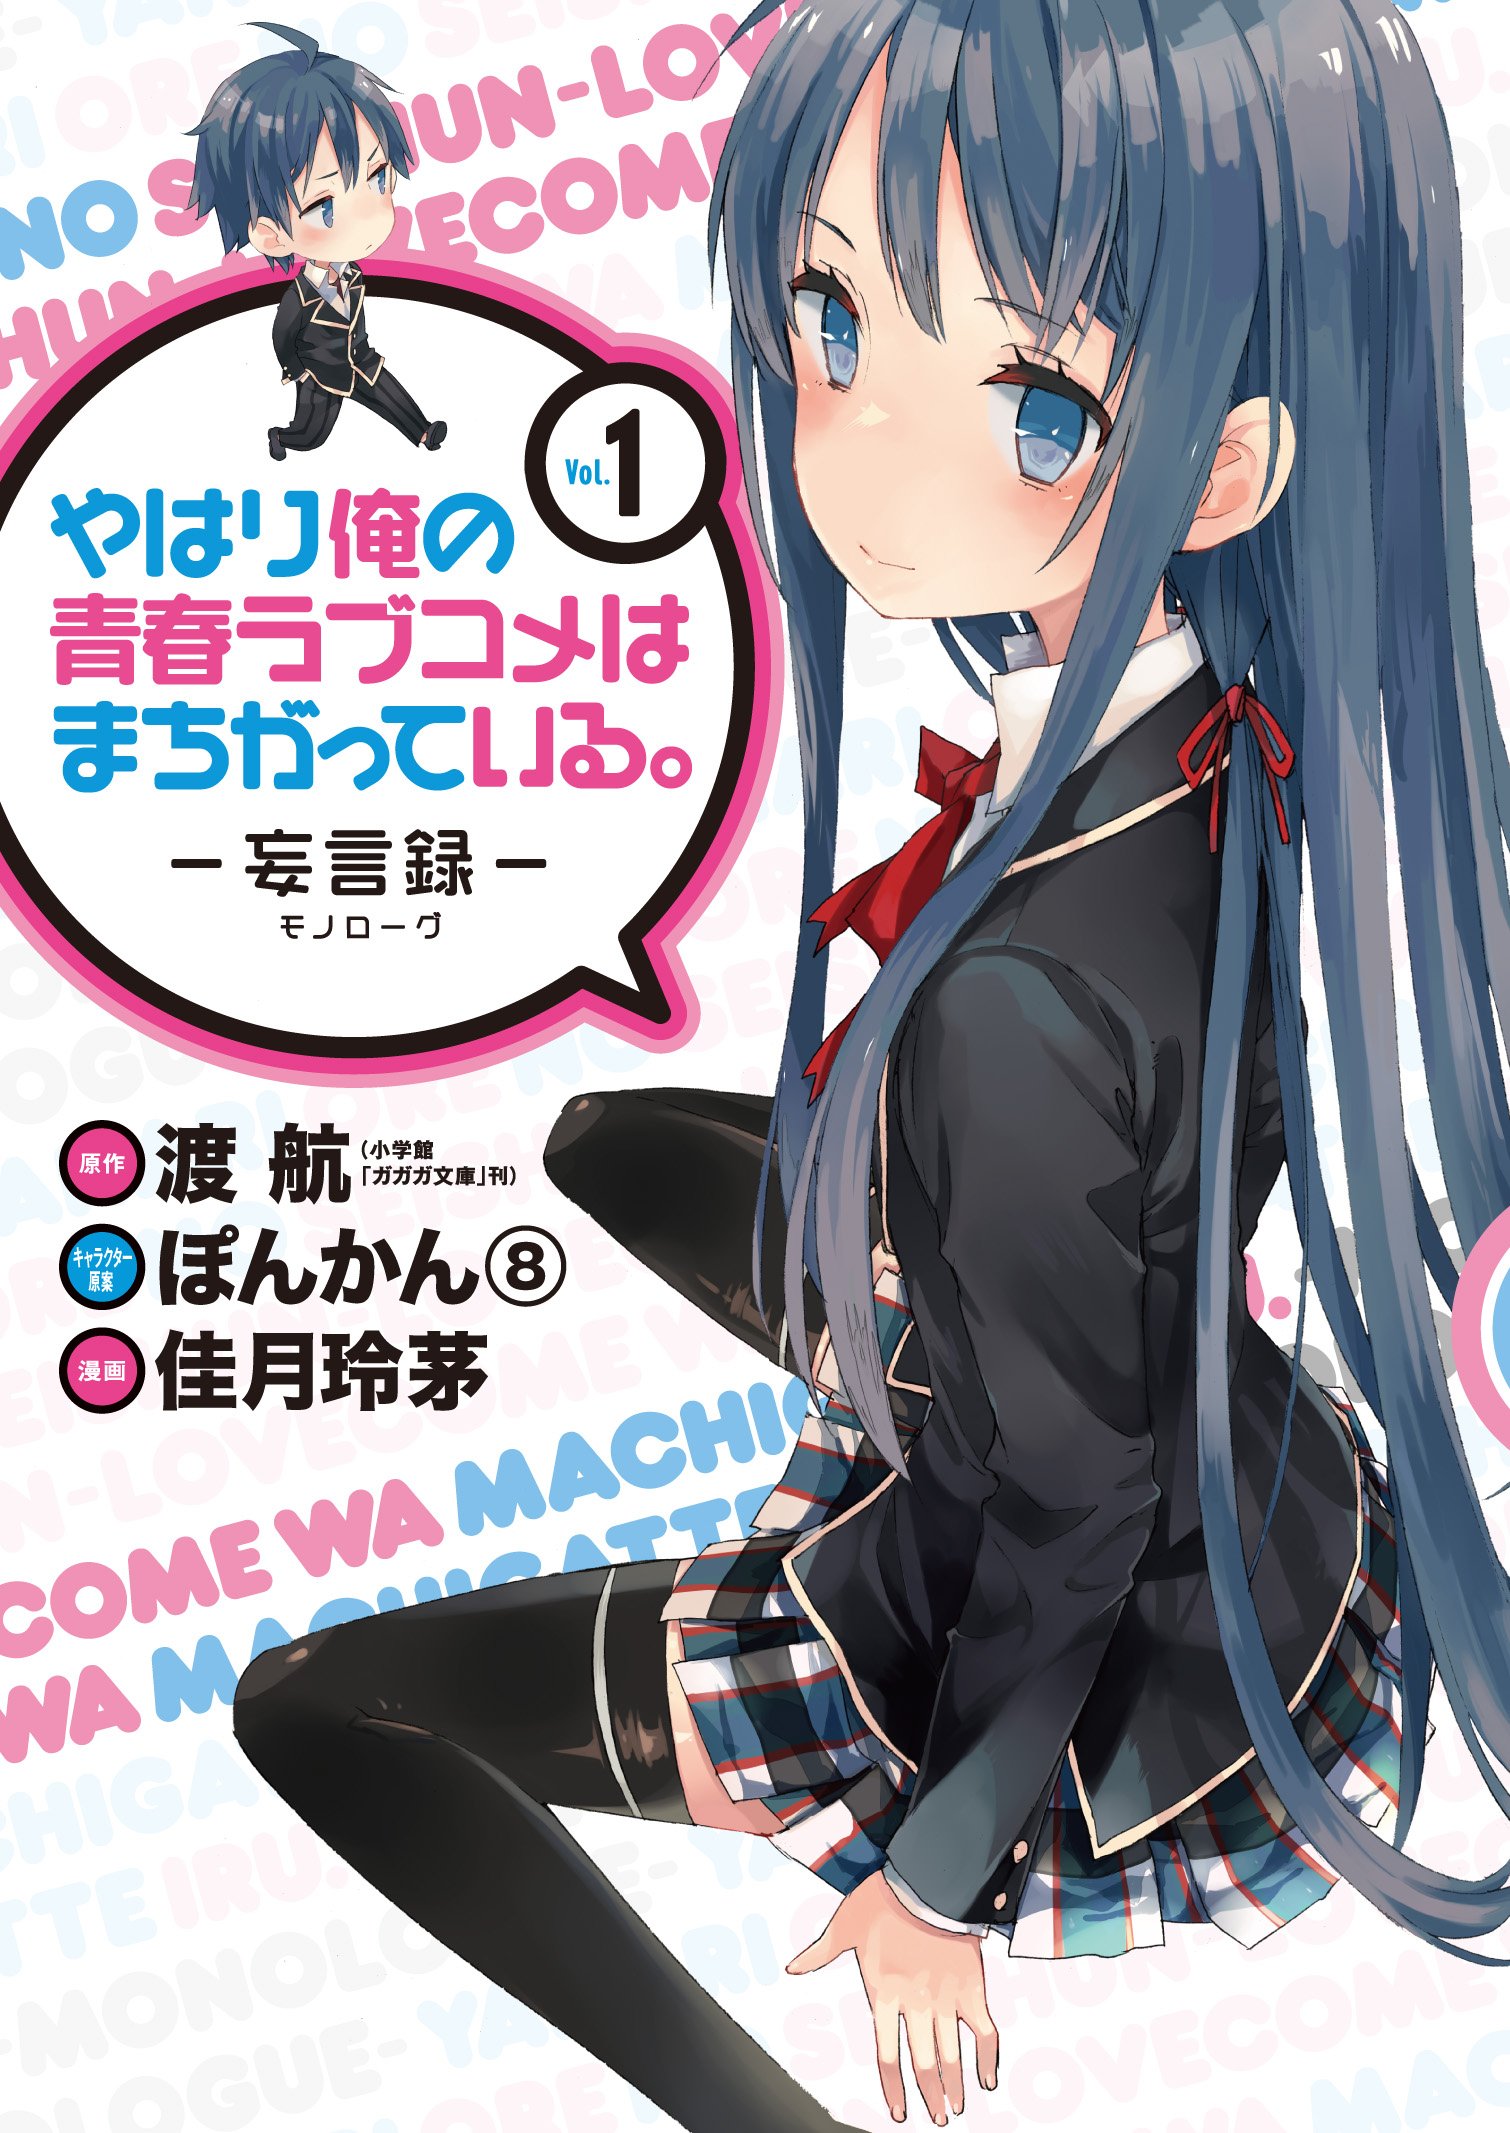 Anime Icon 18, Yahari Ore no Seishun Love Come wa Machigatteiru